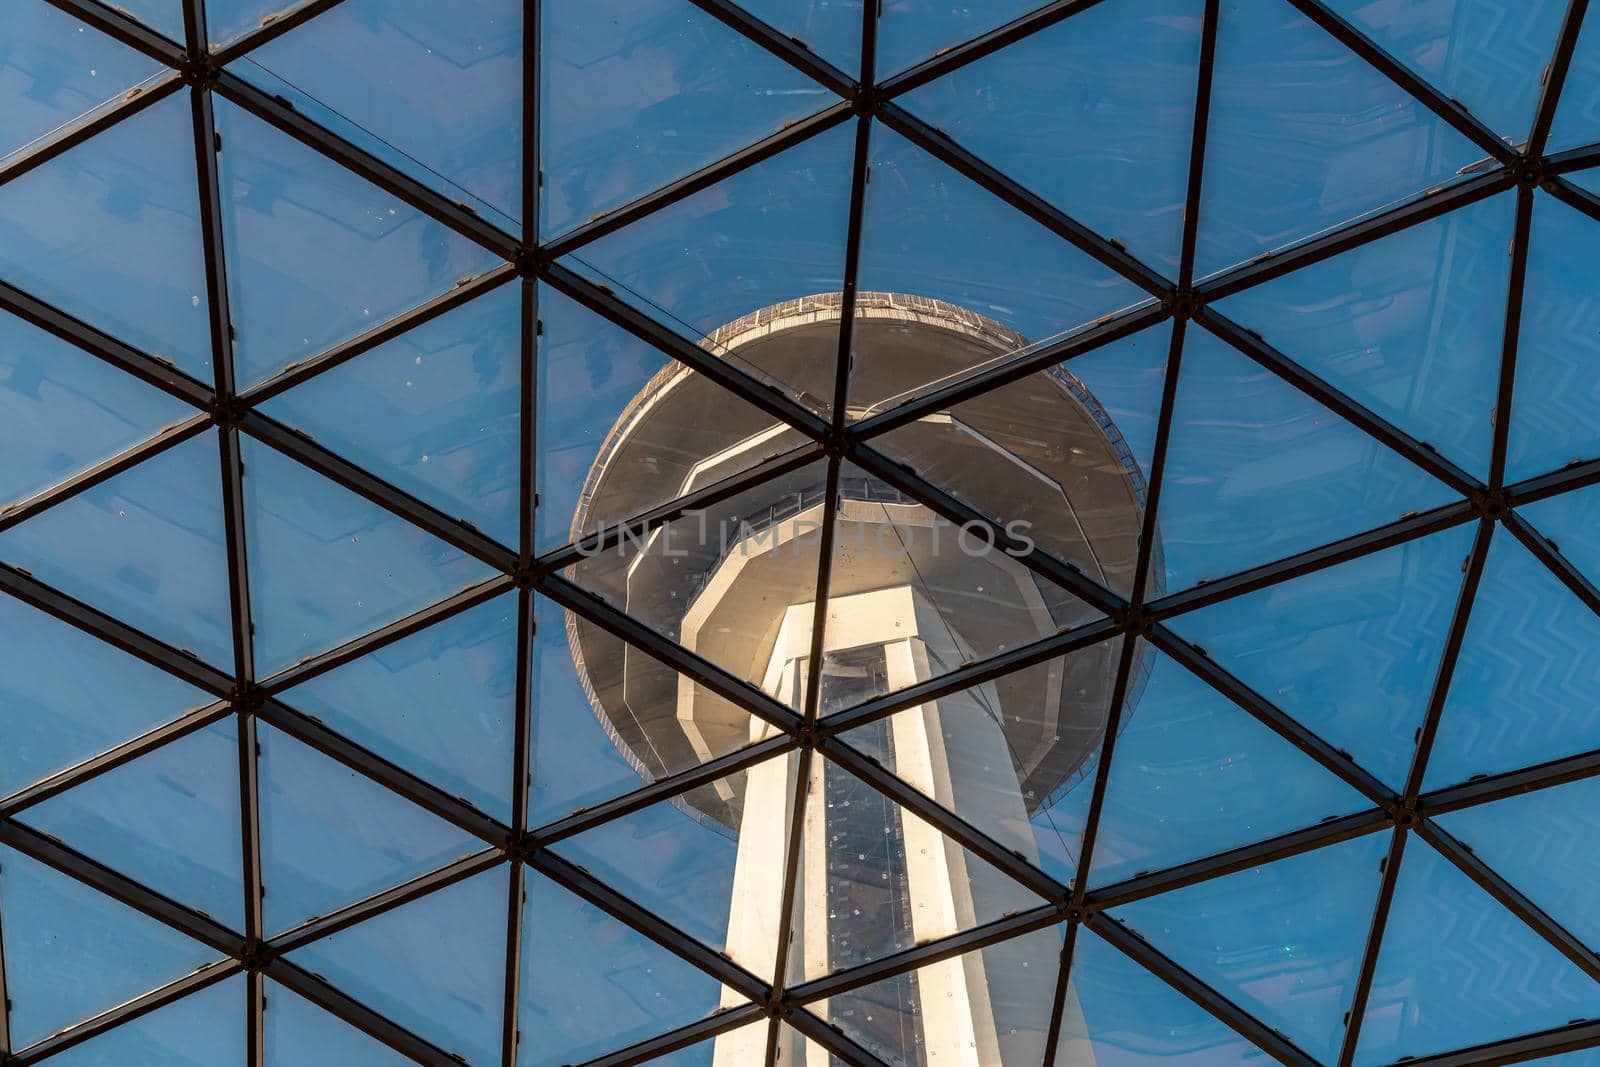 Ankara, Turkey - July 05, 2022: Atakule Tower is the primary landmark of Ankara, Turkey by Sonat